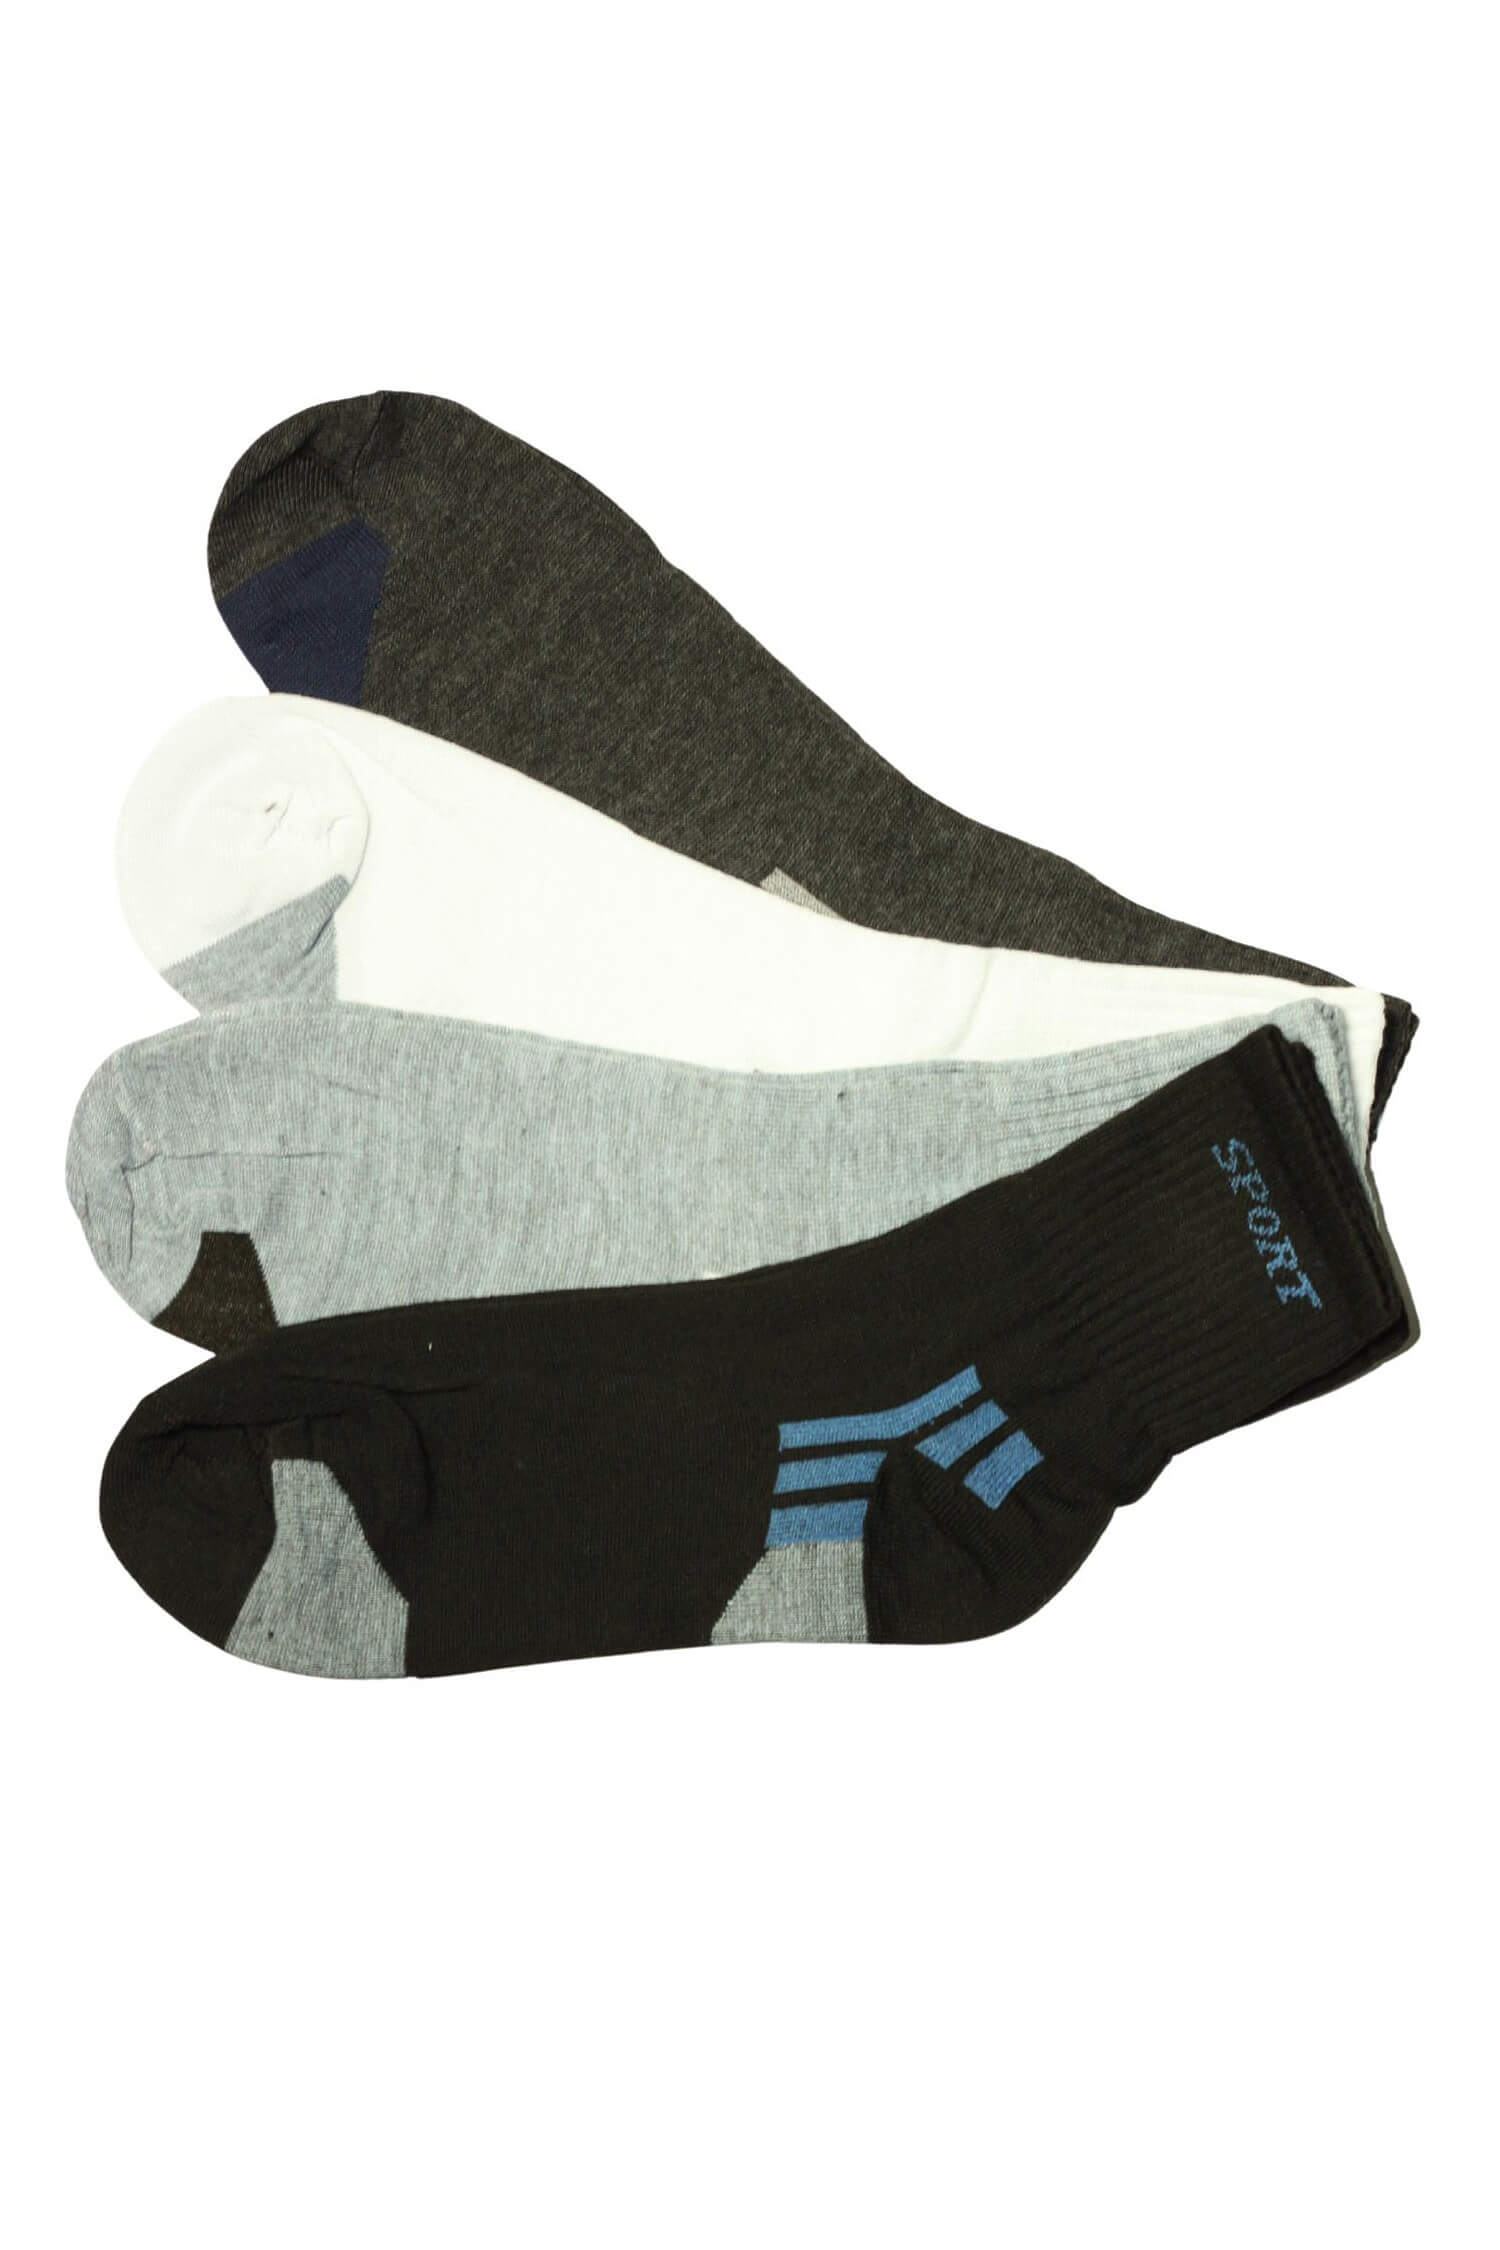 Pánské vysoké ponožky bavlna ZM-378 - 3 páry 44-47 vícebarevná